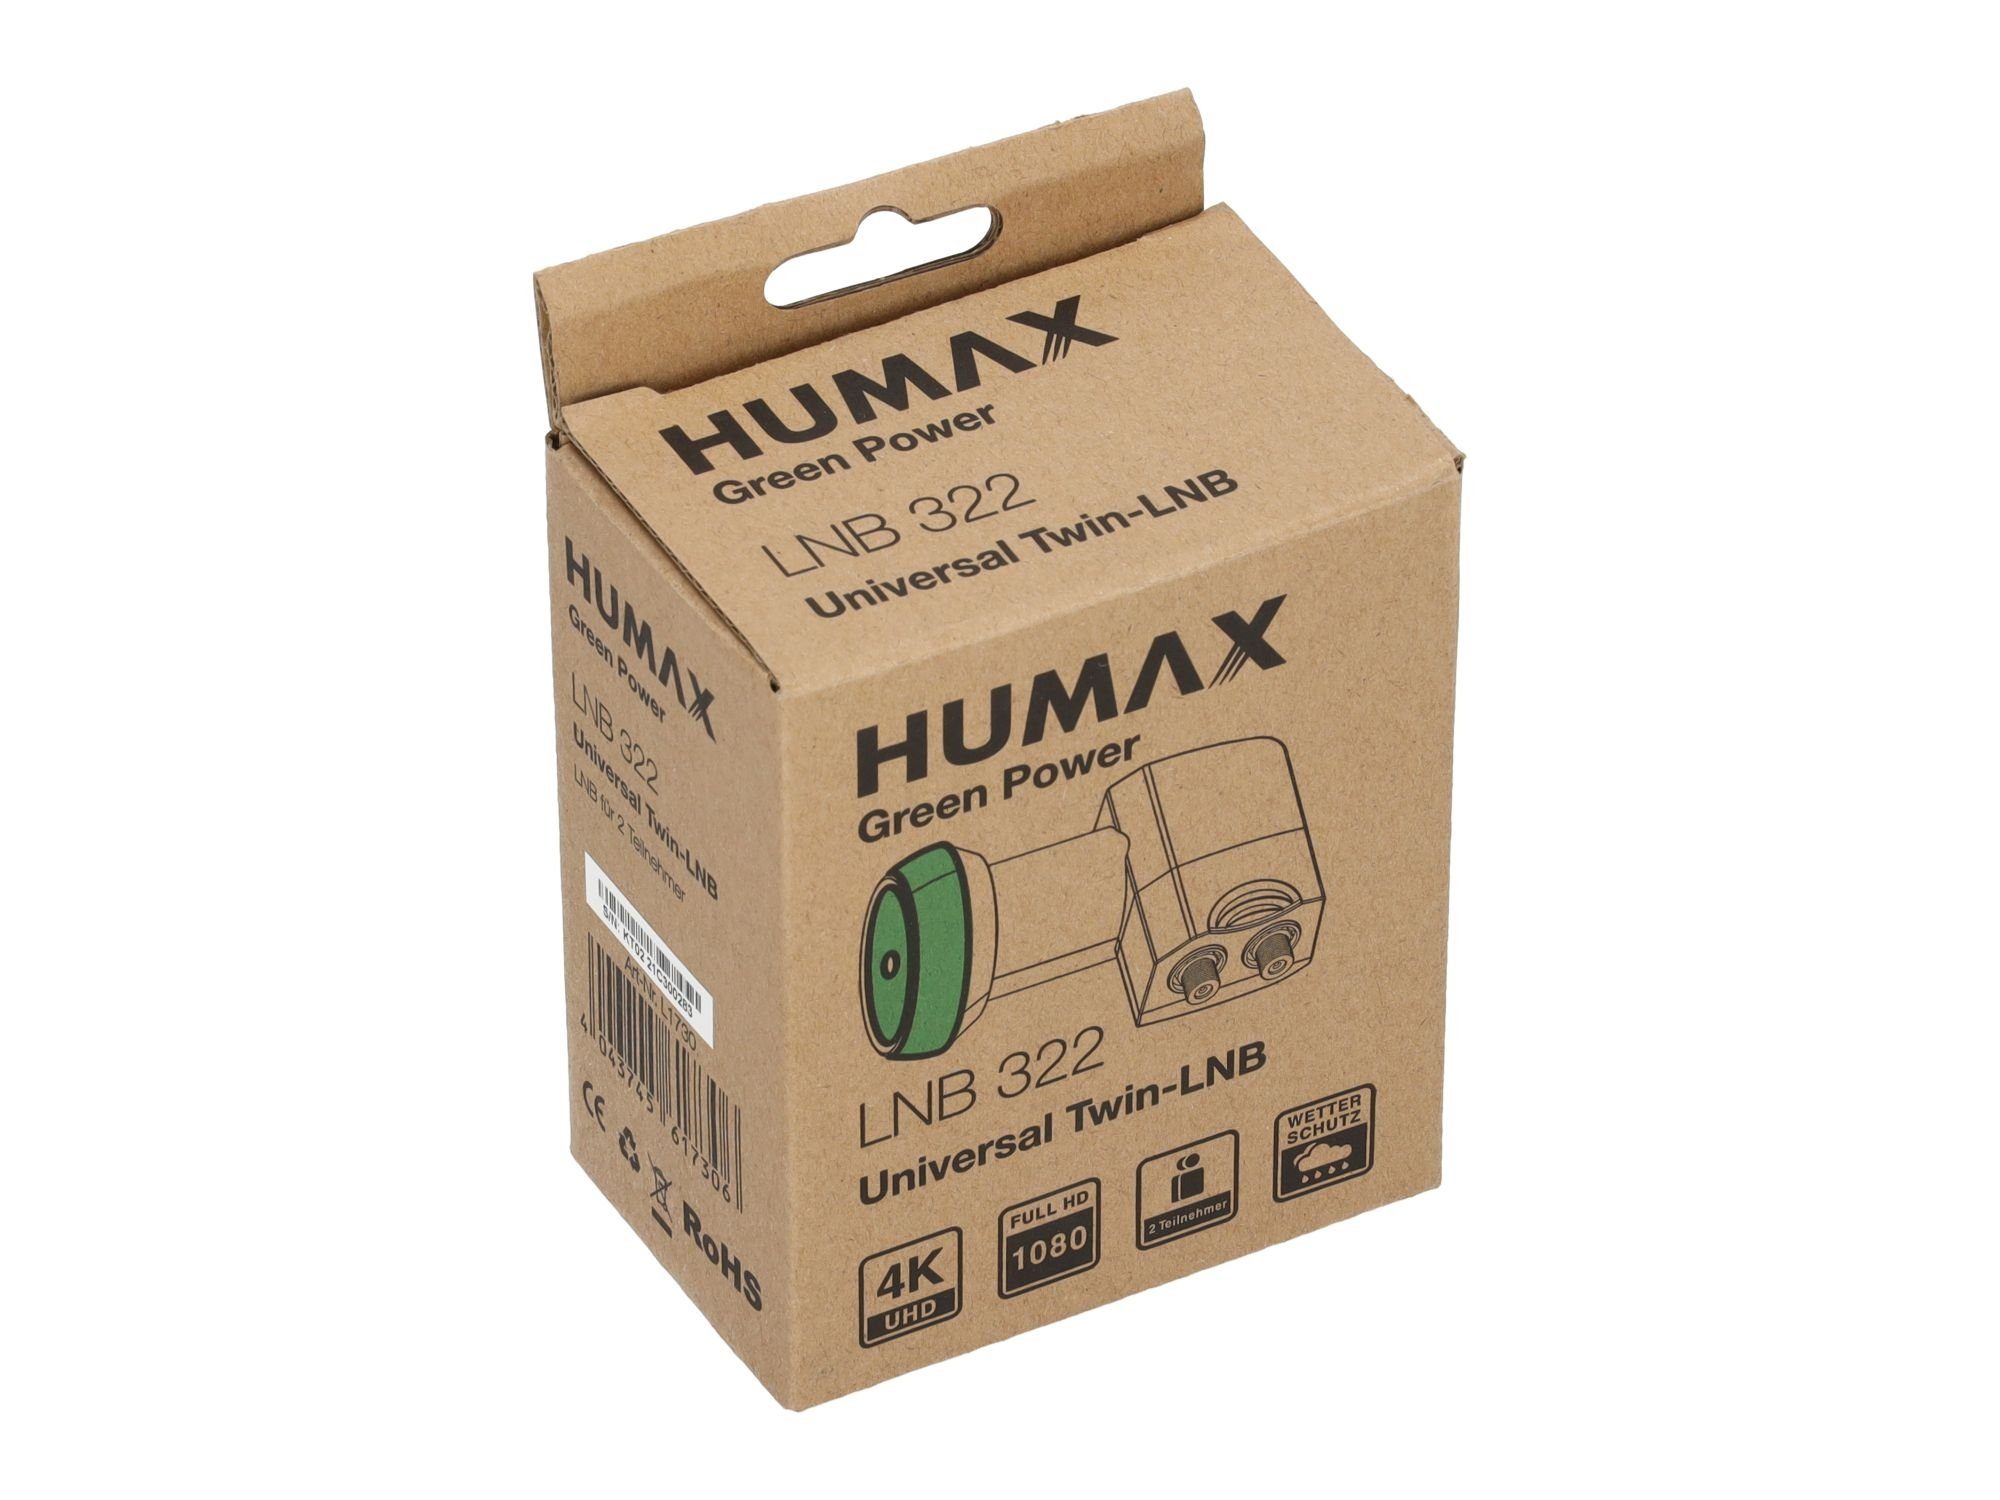 Humax Green stromsparend Umweltfreundliche Power Teilnehmer, LTE Filter) (für 322, Universal-Twin-LNB Twin-LNB Verpackung, 2